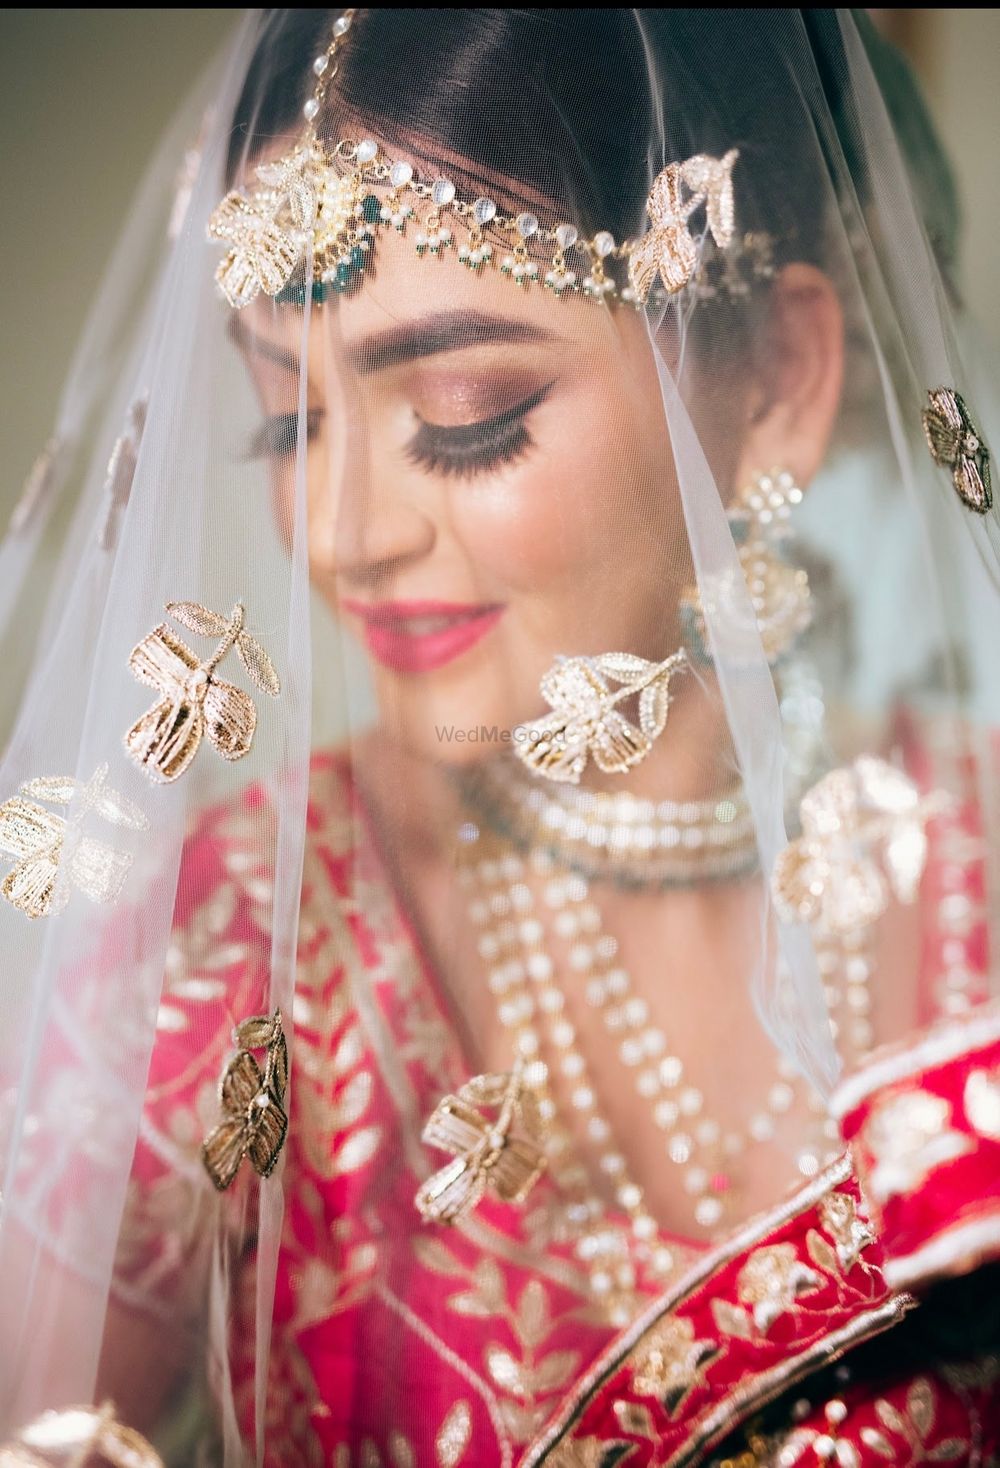 Photo of bride under veil shot